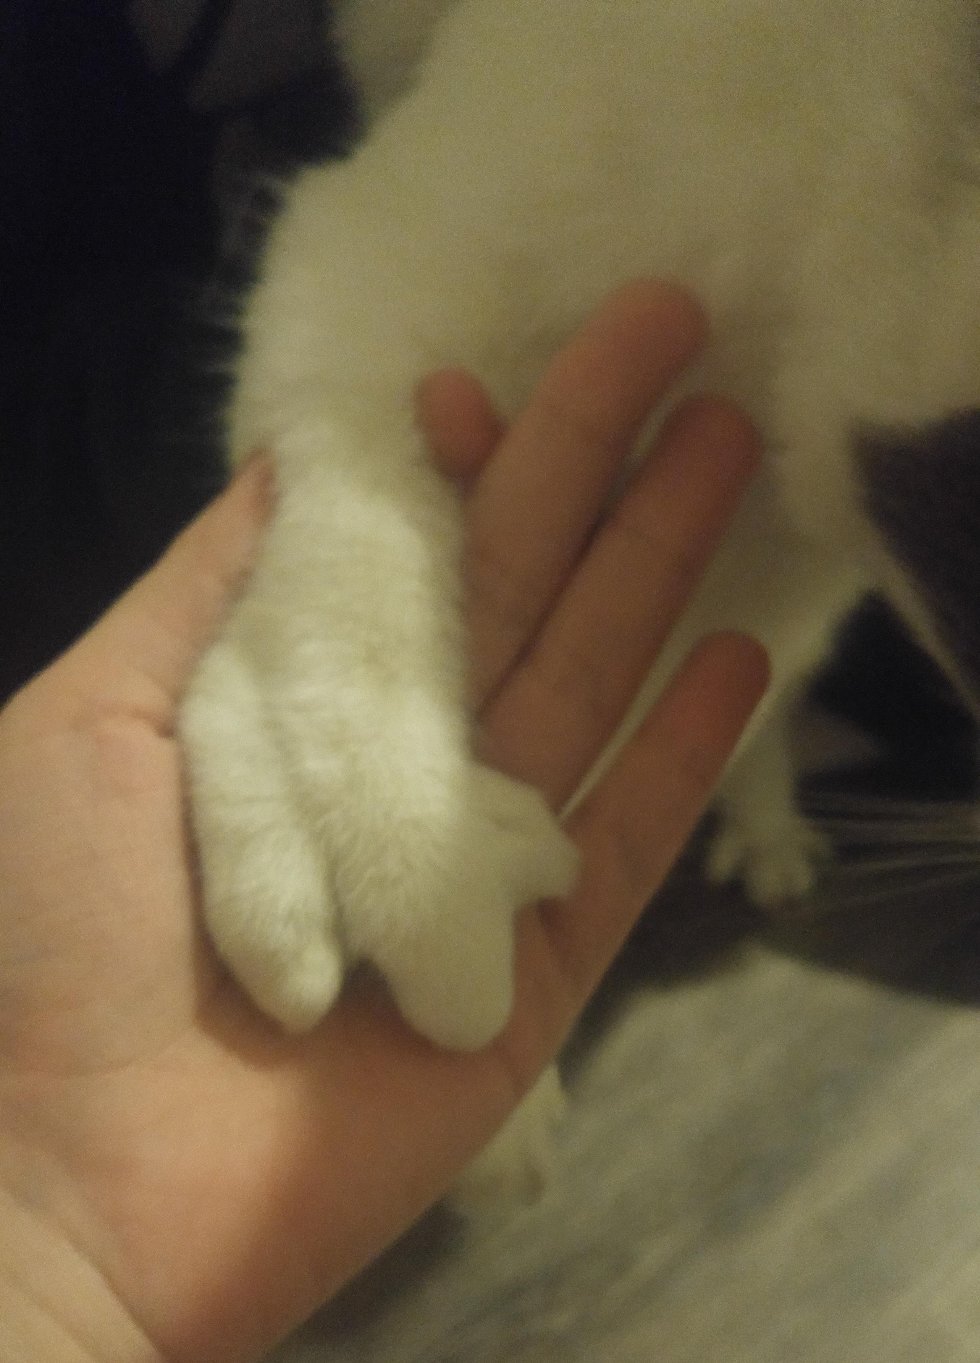 Сколько пальчиков у котика на лапке